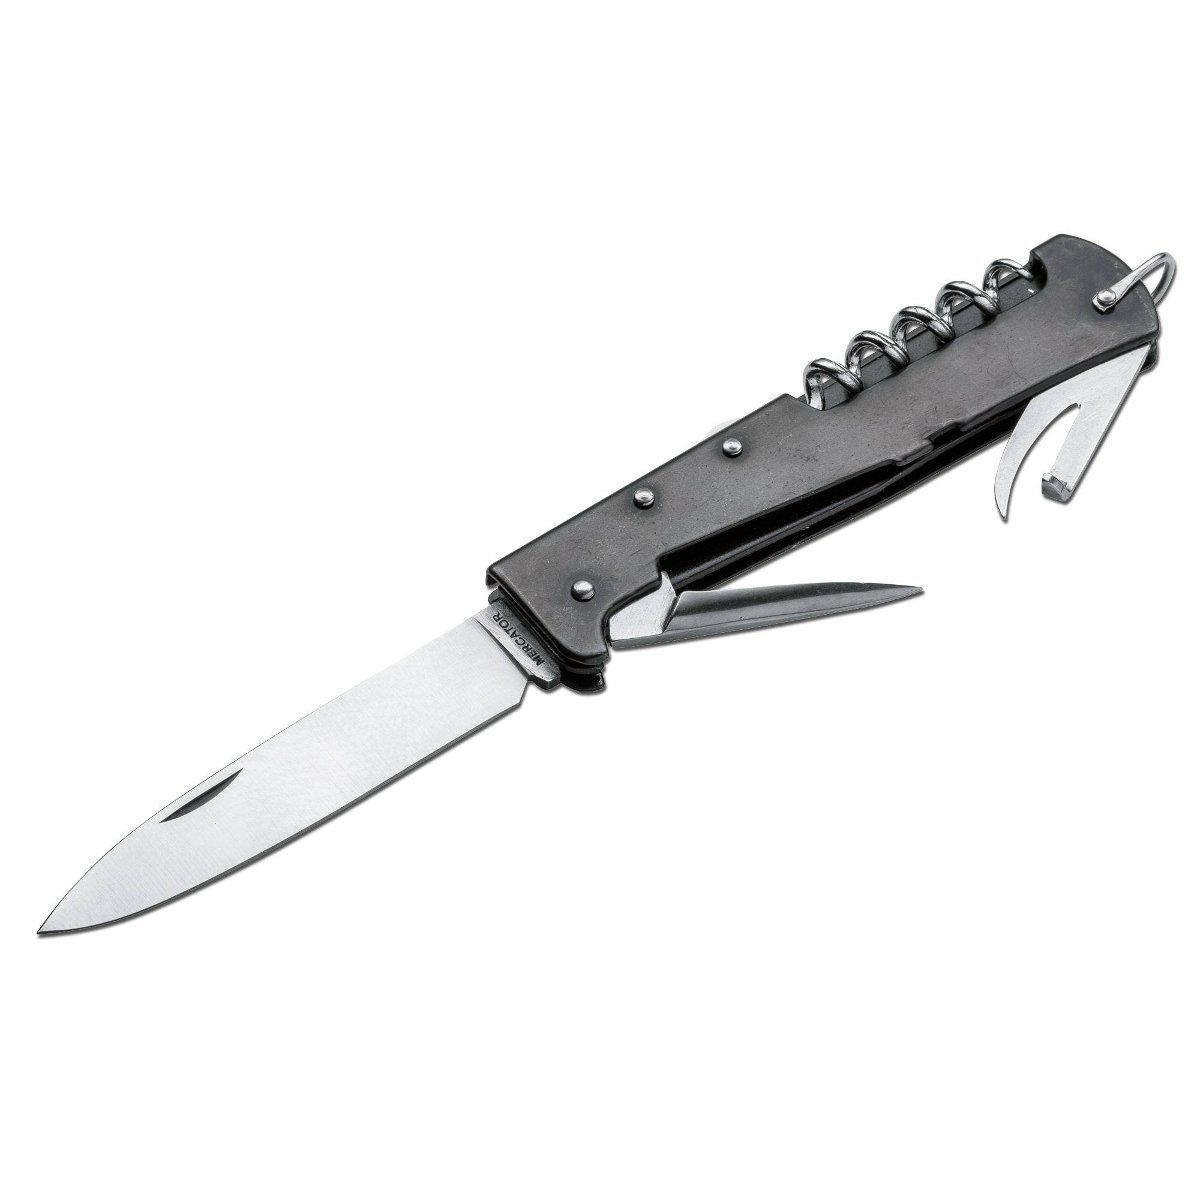 Messer Stahl Carbonstahl, Klinge Mercator-Messer Backlock Multi groß brüniert, Taschenmesser Otter